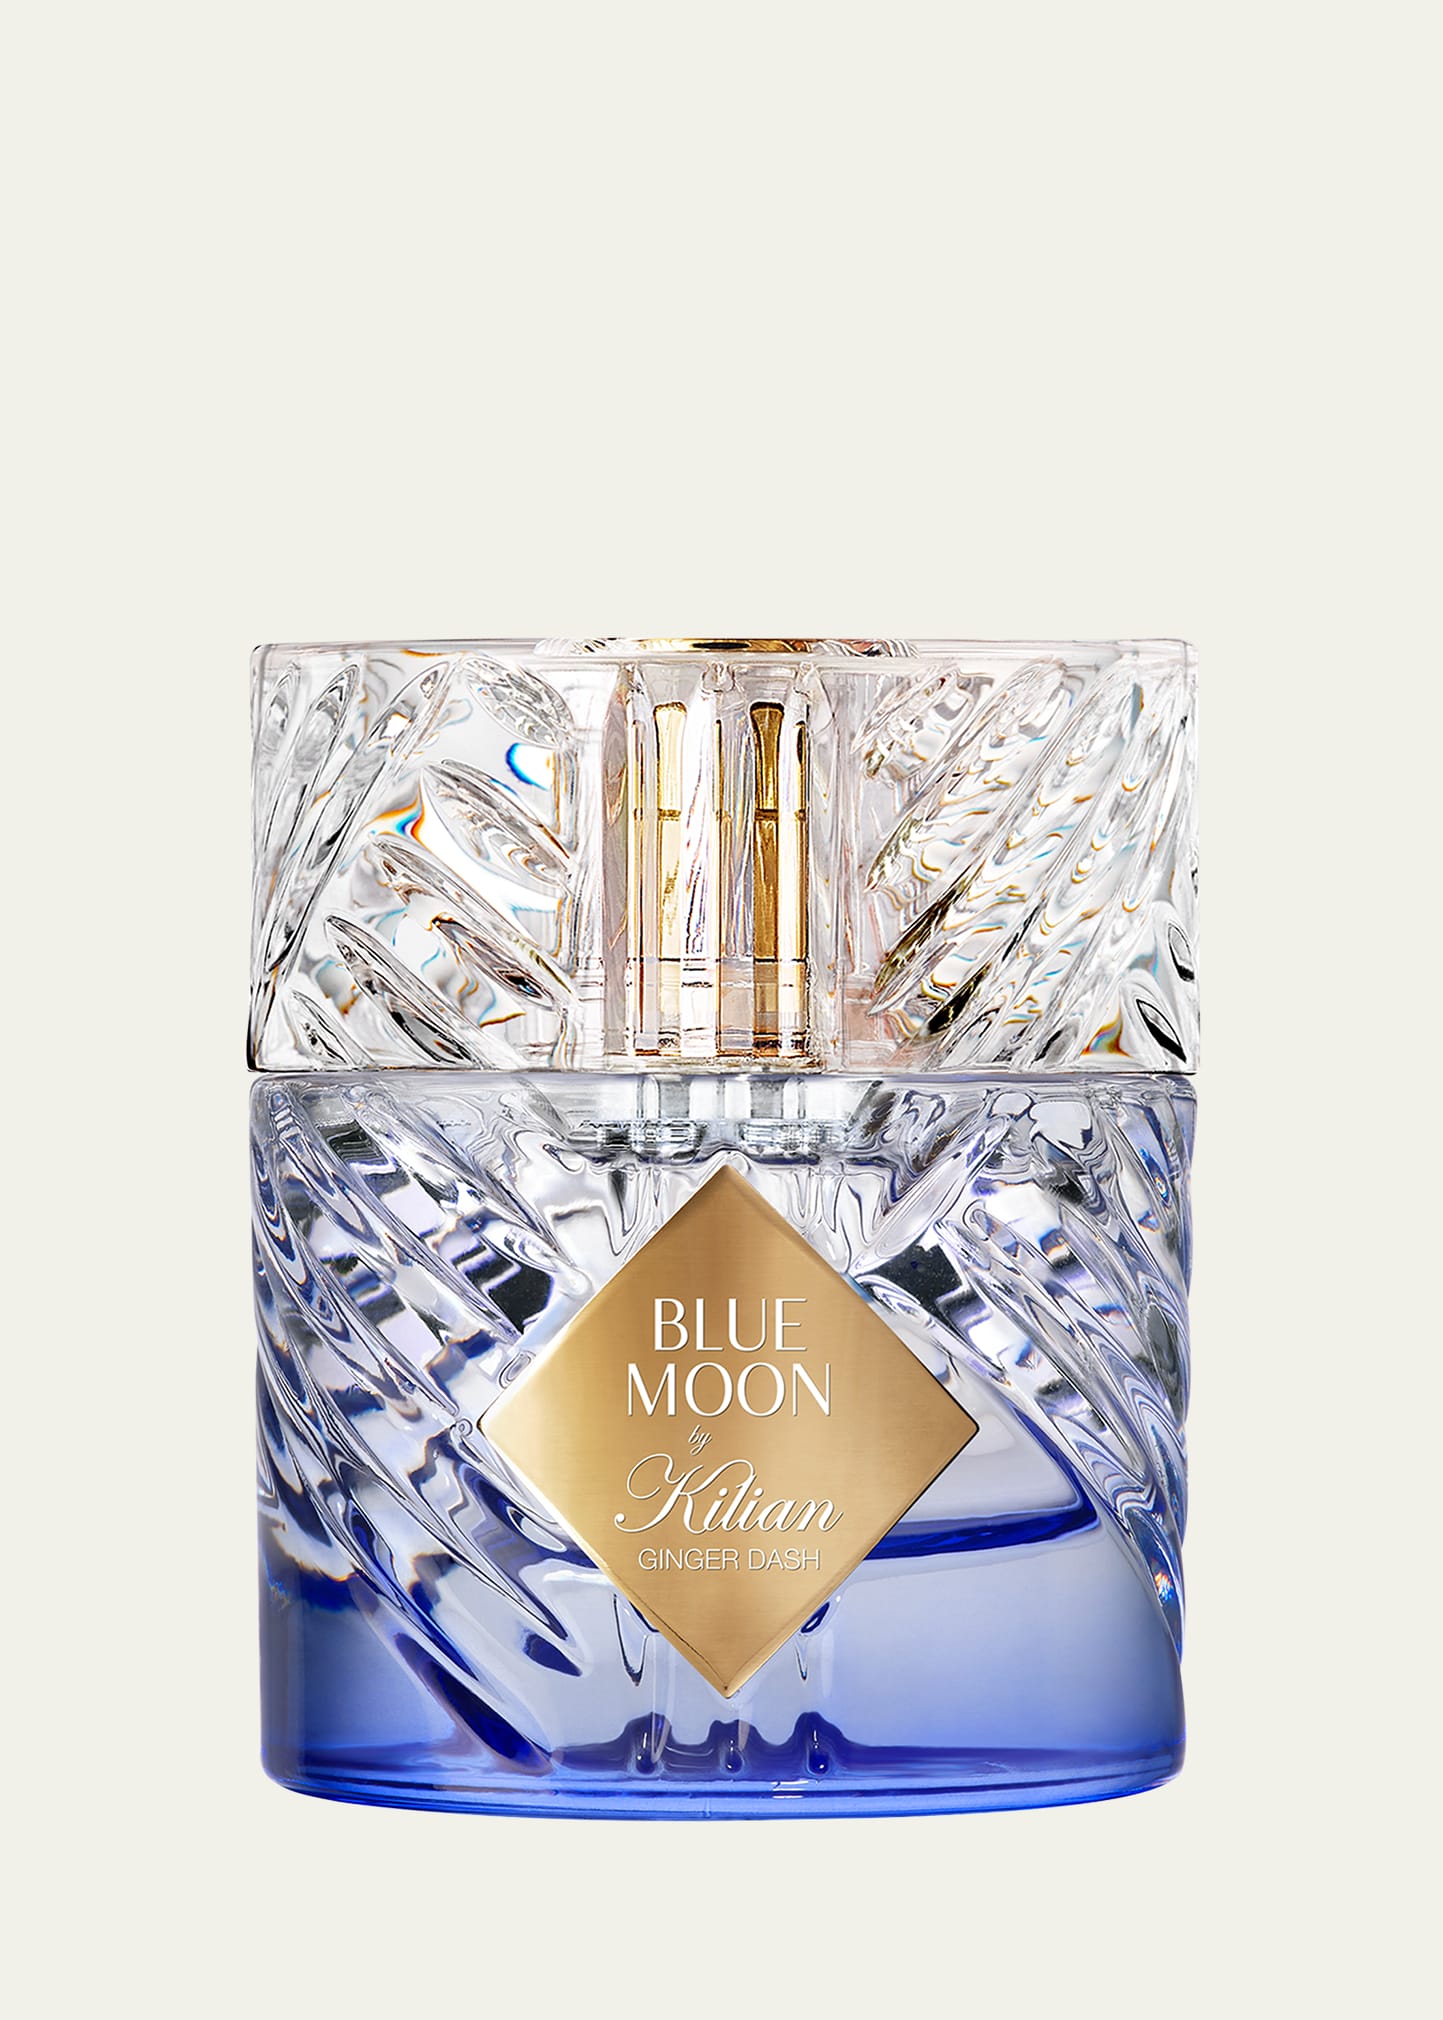 Kilian Blue Moon Ginger Dash Eau De Parfum, 1.7 Oz.